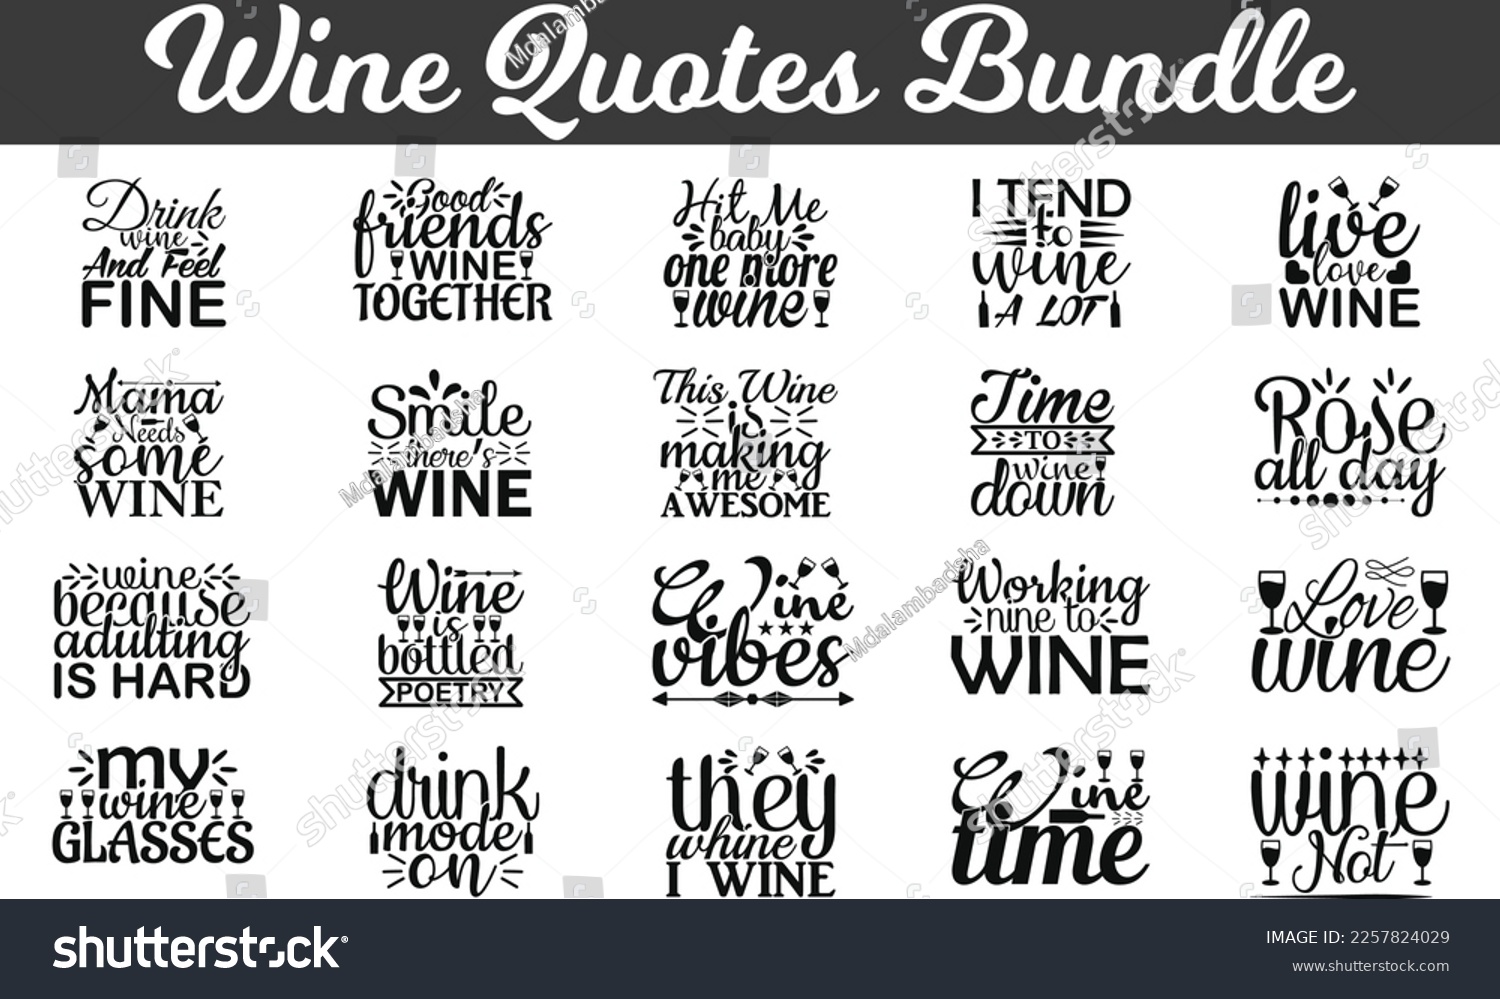 SVG of Wine Quotes Bundle, SVG design, SVG bundle svg